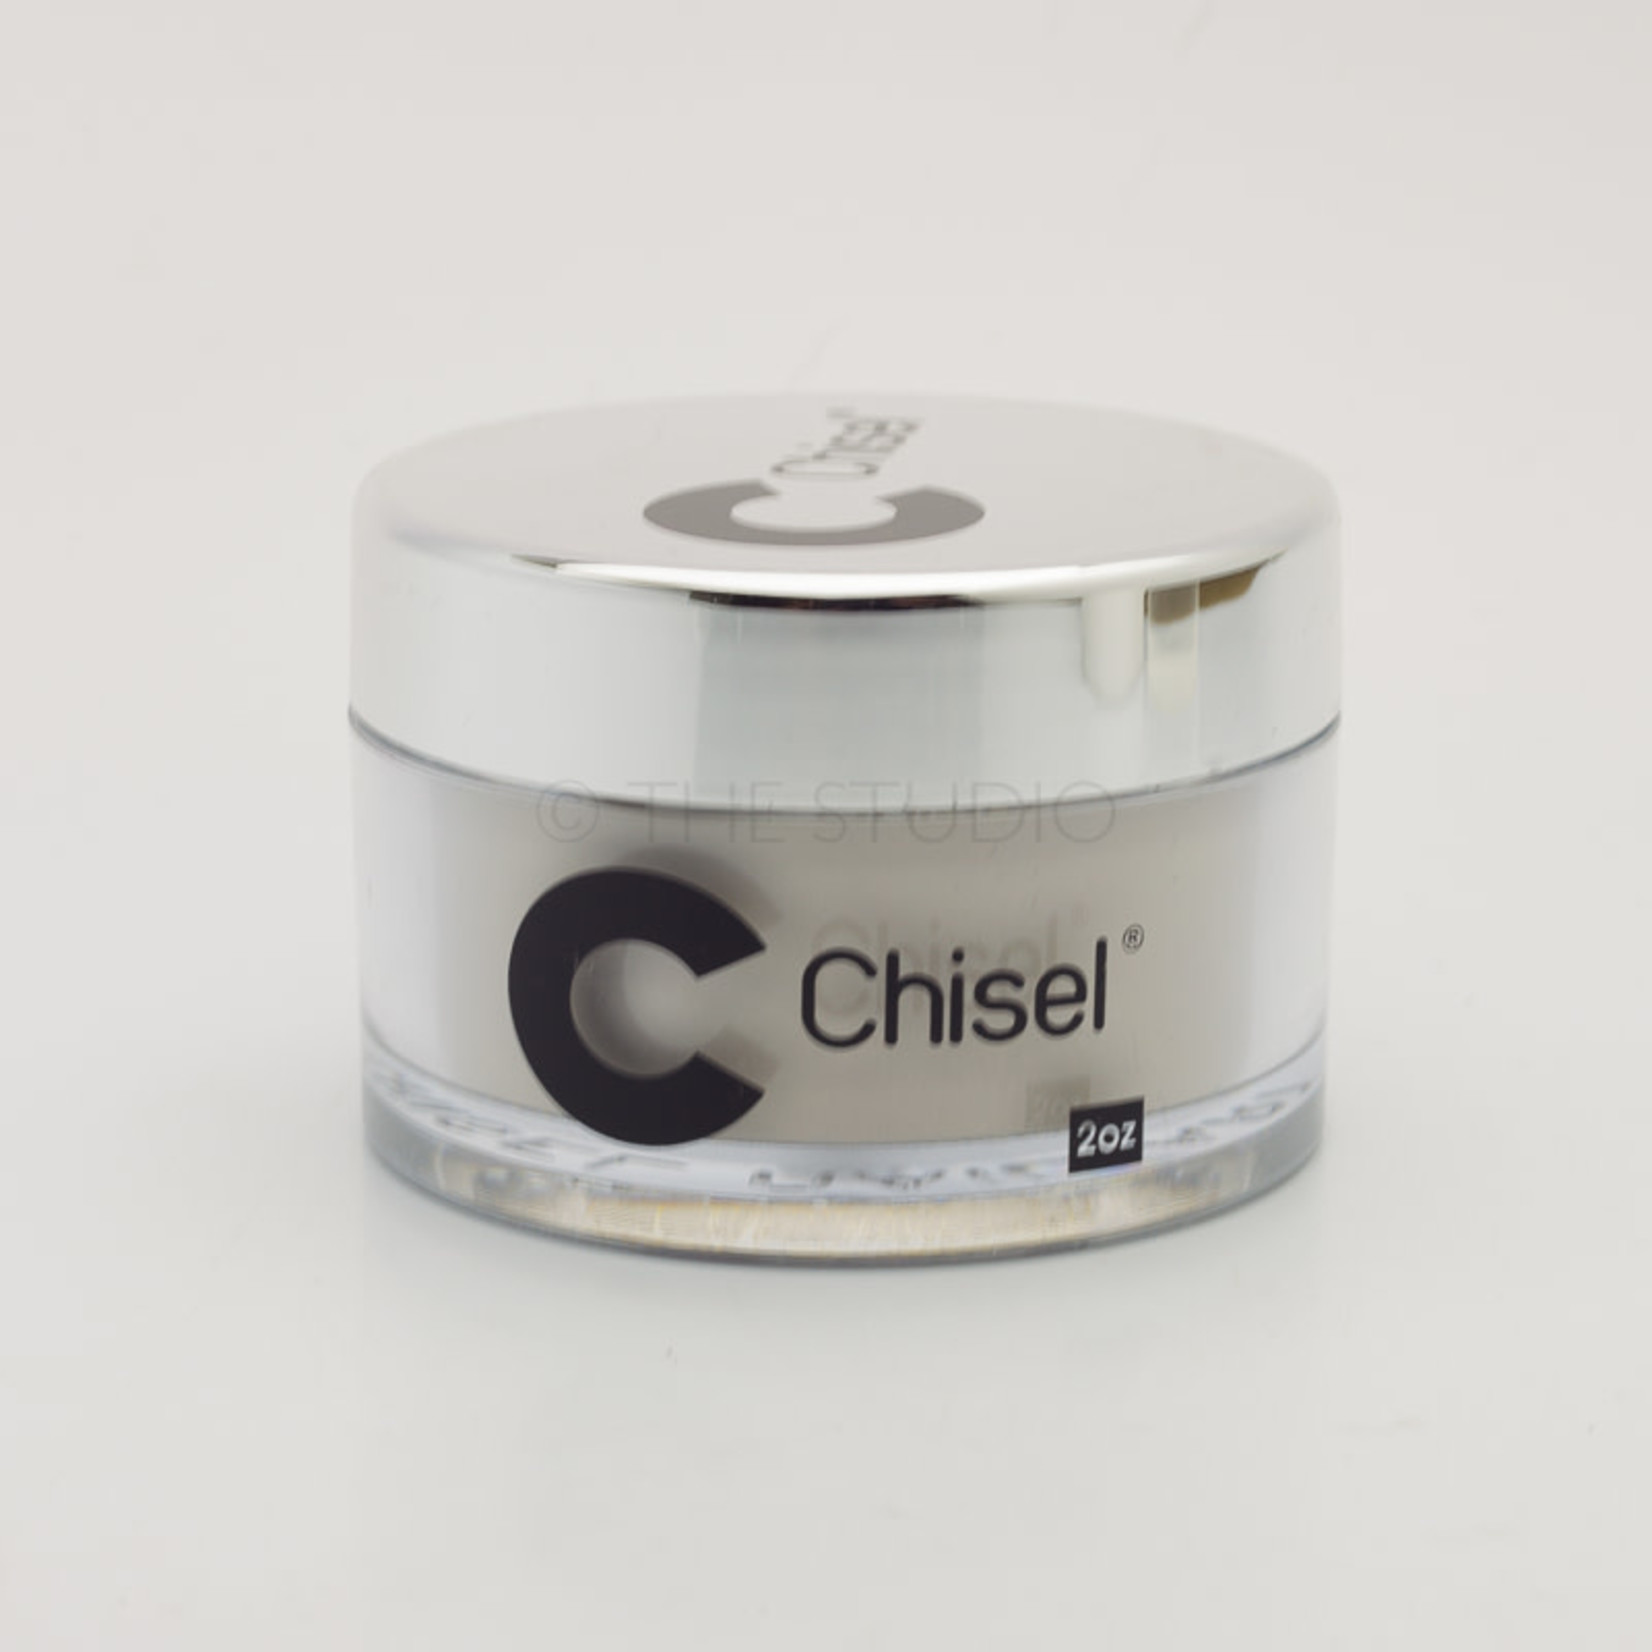 Chisel Chisel - Solid 079 - AIO Powder - 2 oz